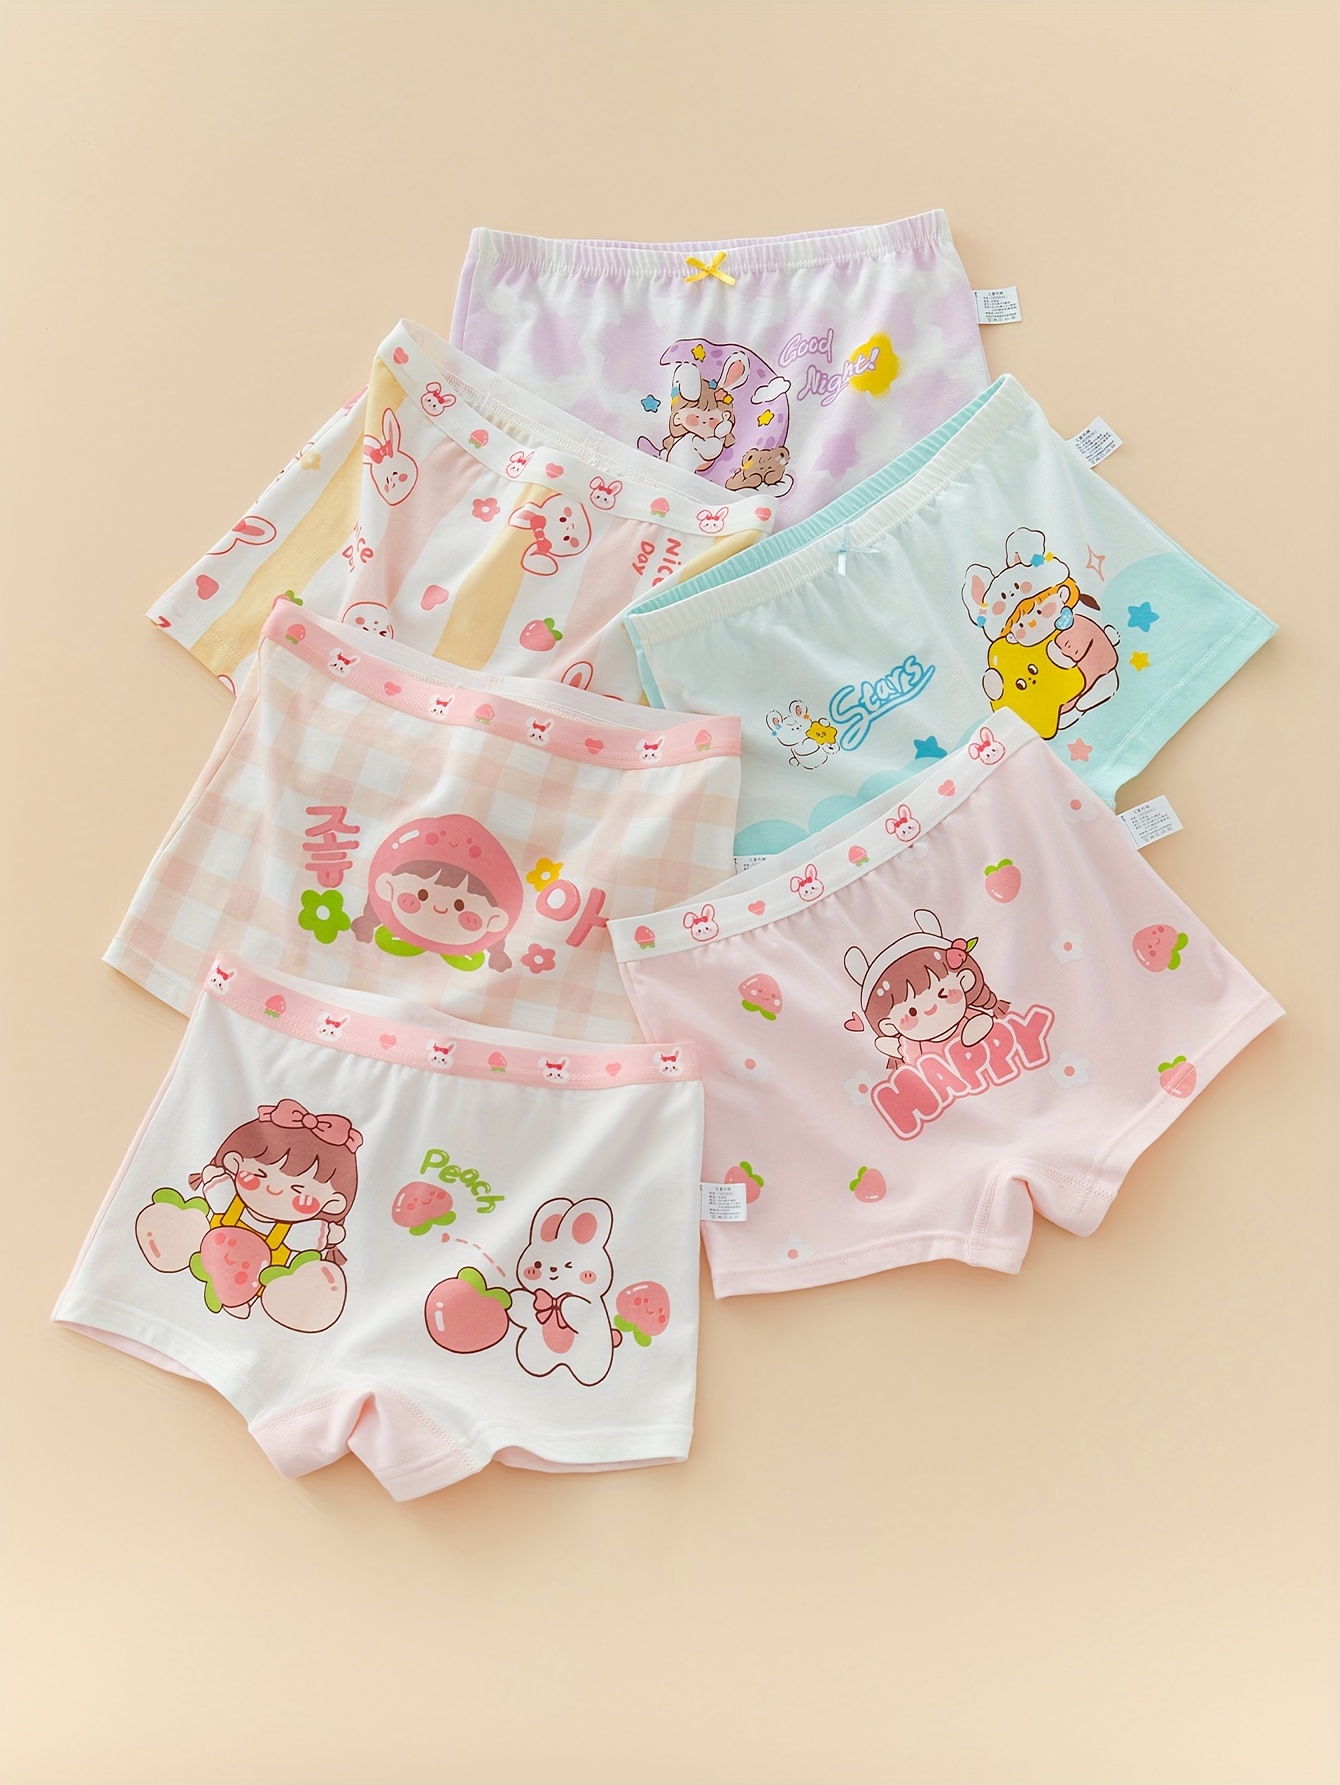 Children Cute Briefs Boxers Girl Cotton Underwear Kid Bright Printing  Mickey Minnie Snow white Design Quality